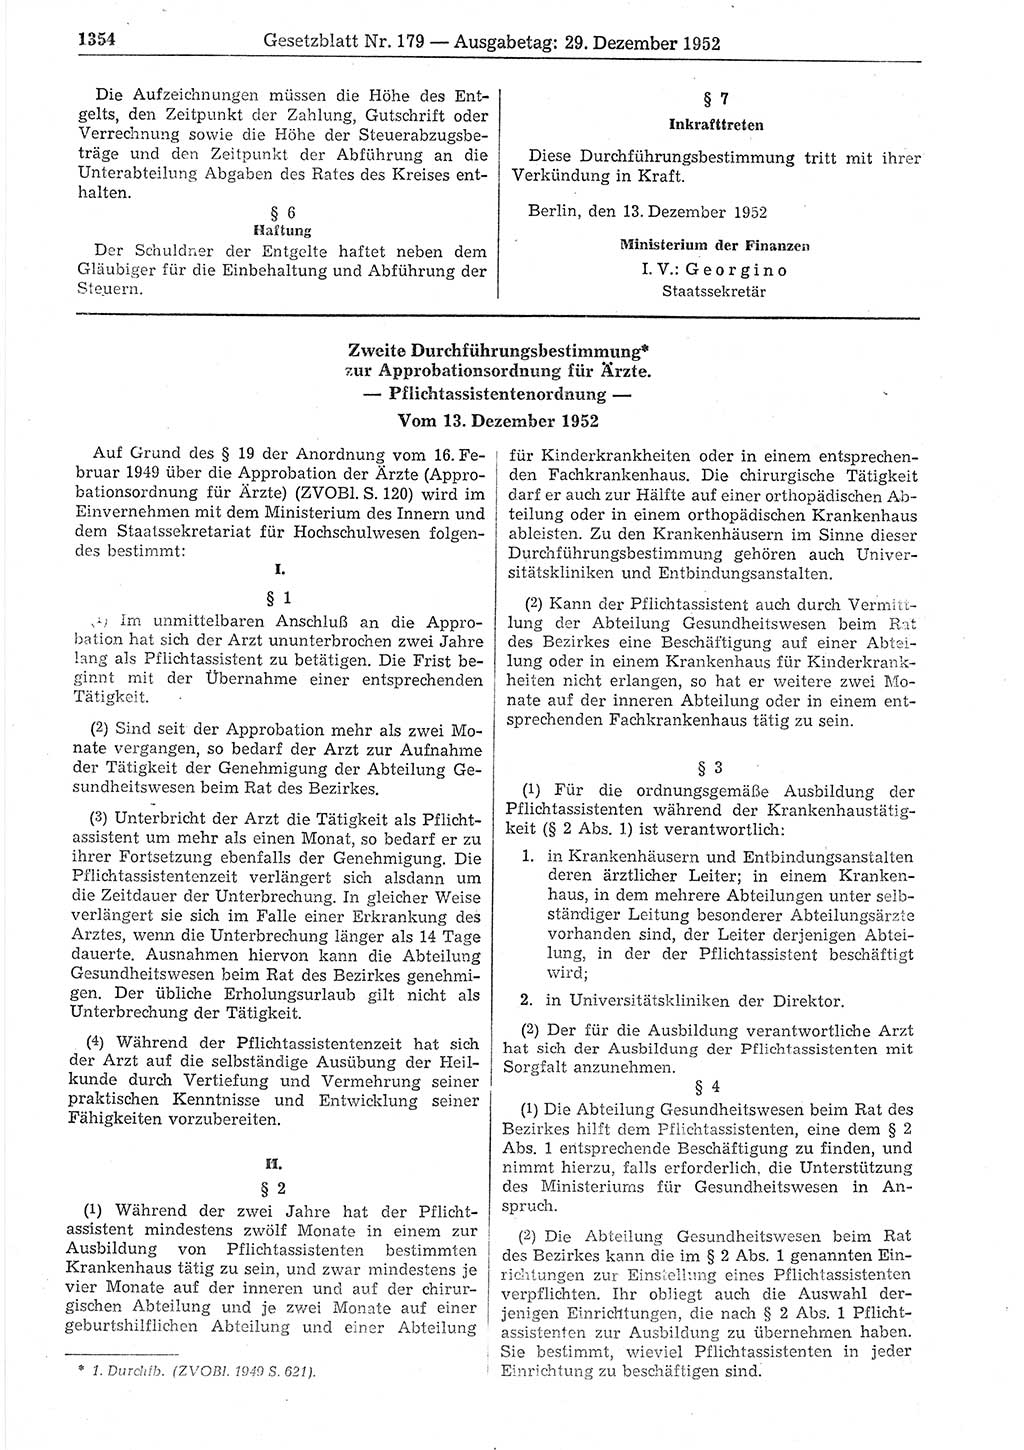 Gesetzblatt (GBl.) der Deutschen Demokratischen Republik (DDR) 1952, Seite 1354 (GBl. DDR 1952, S. 1354)